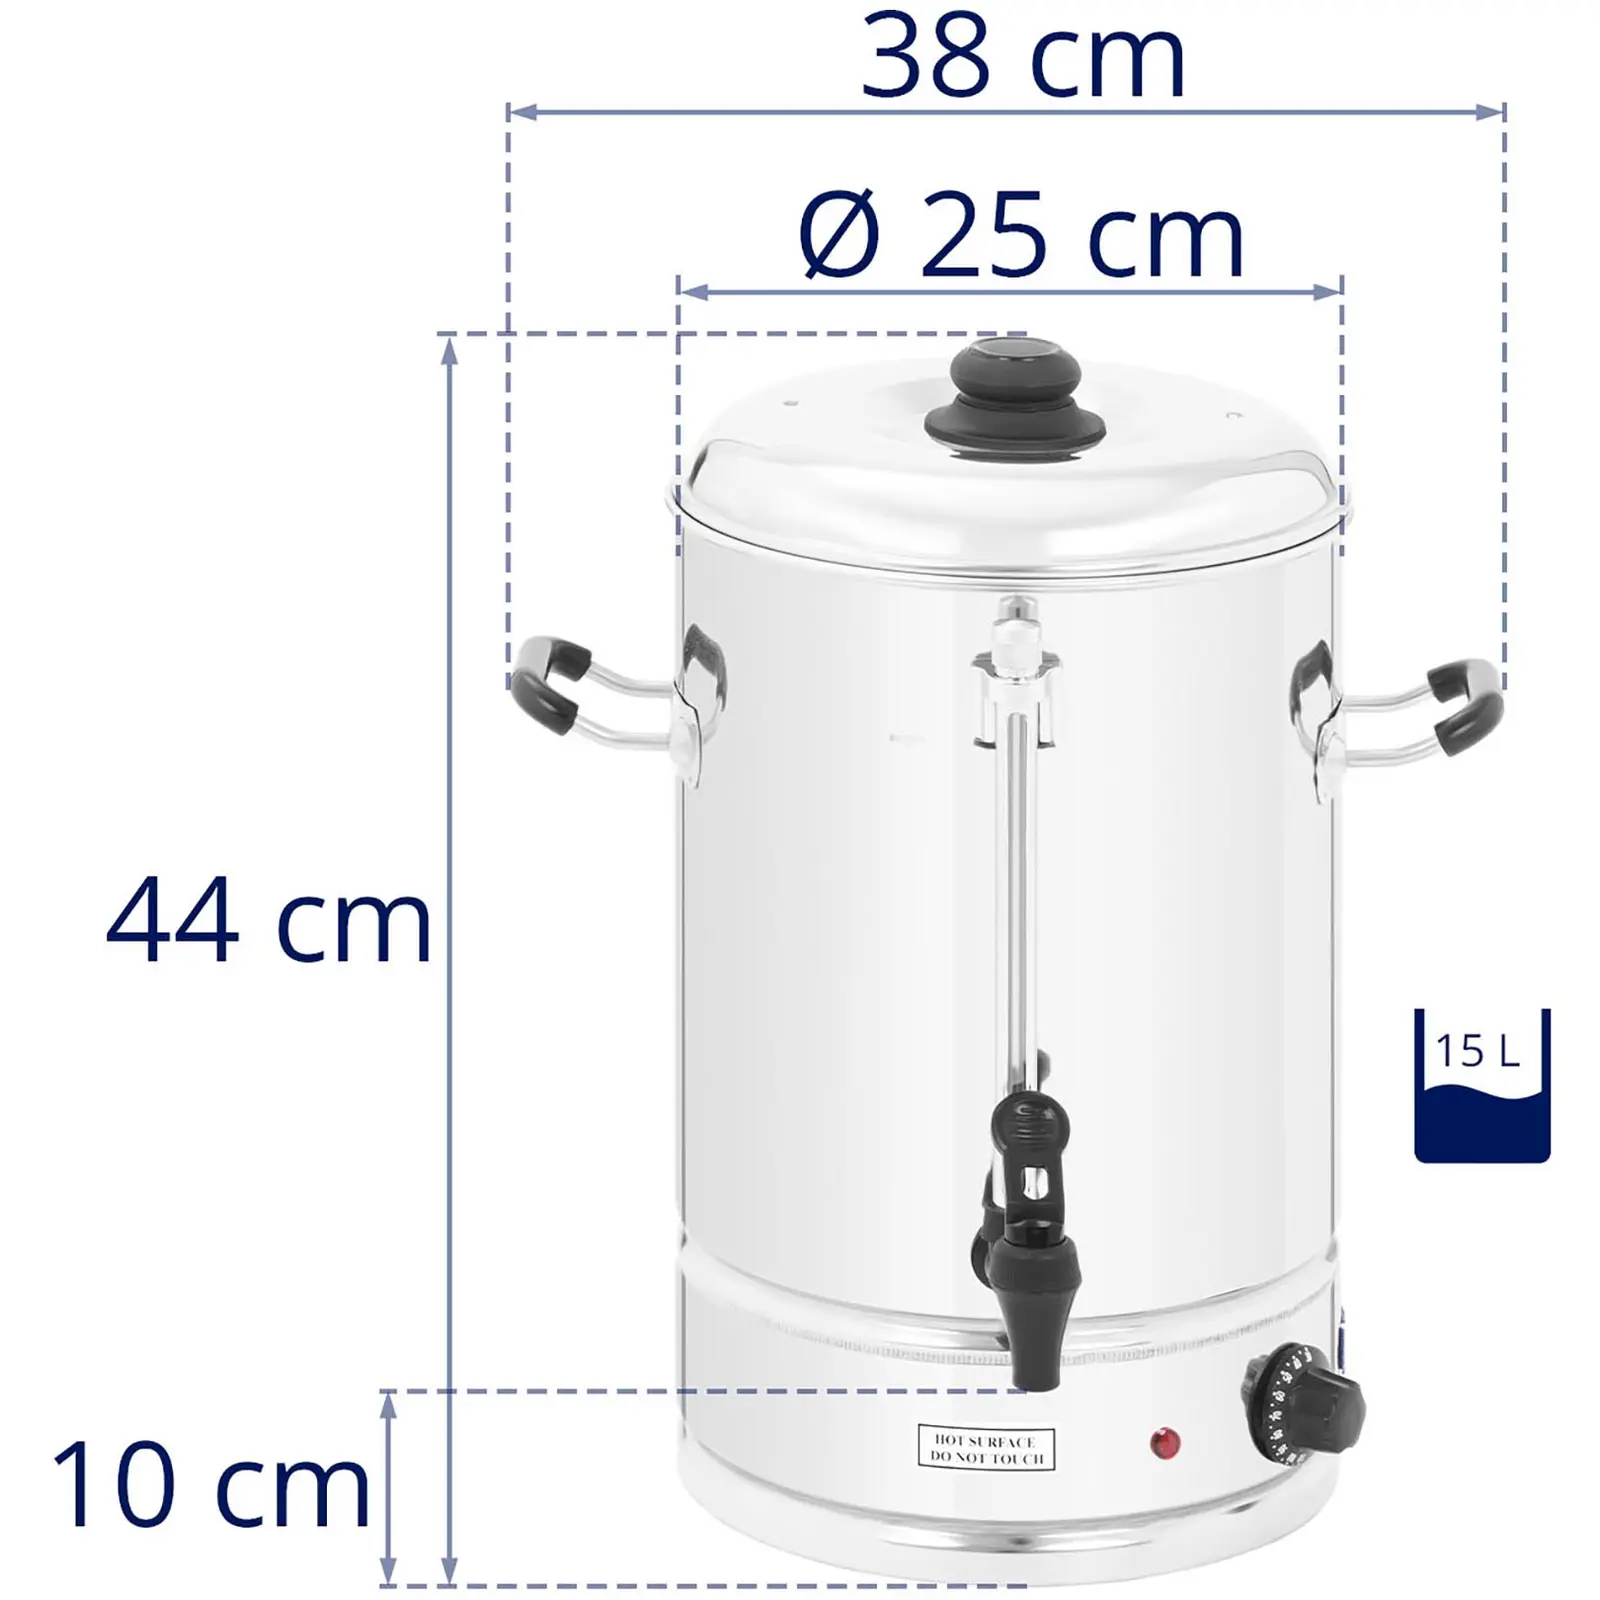 Distributeur d'eau chaude - 15 litres